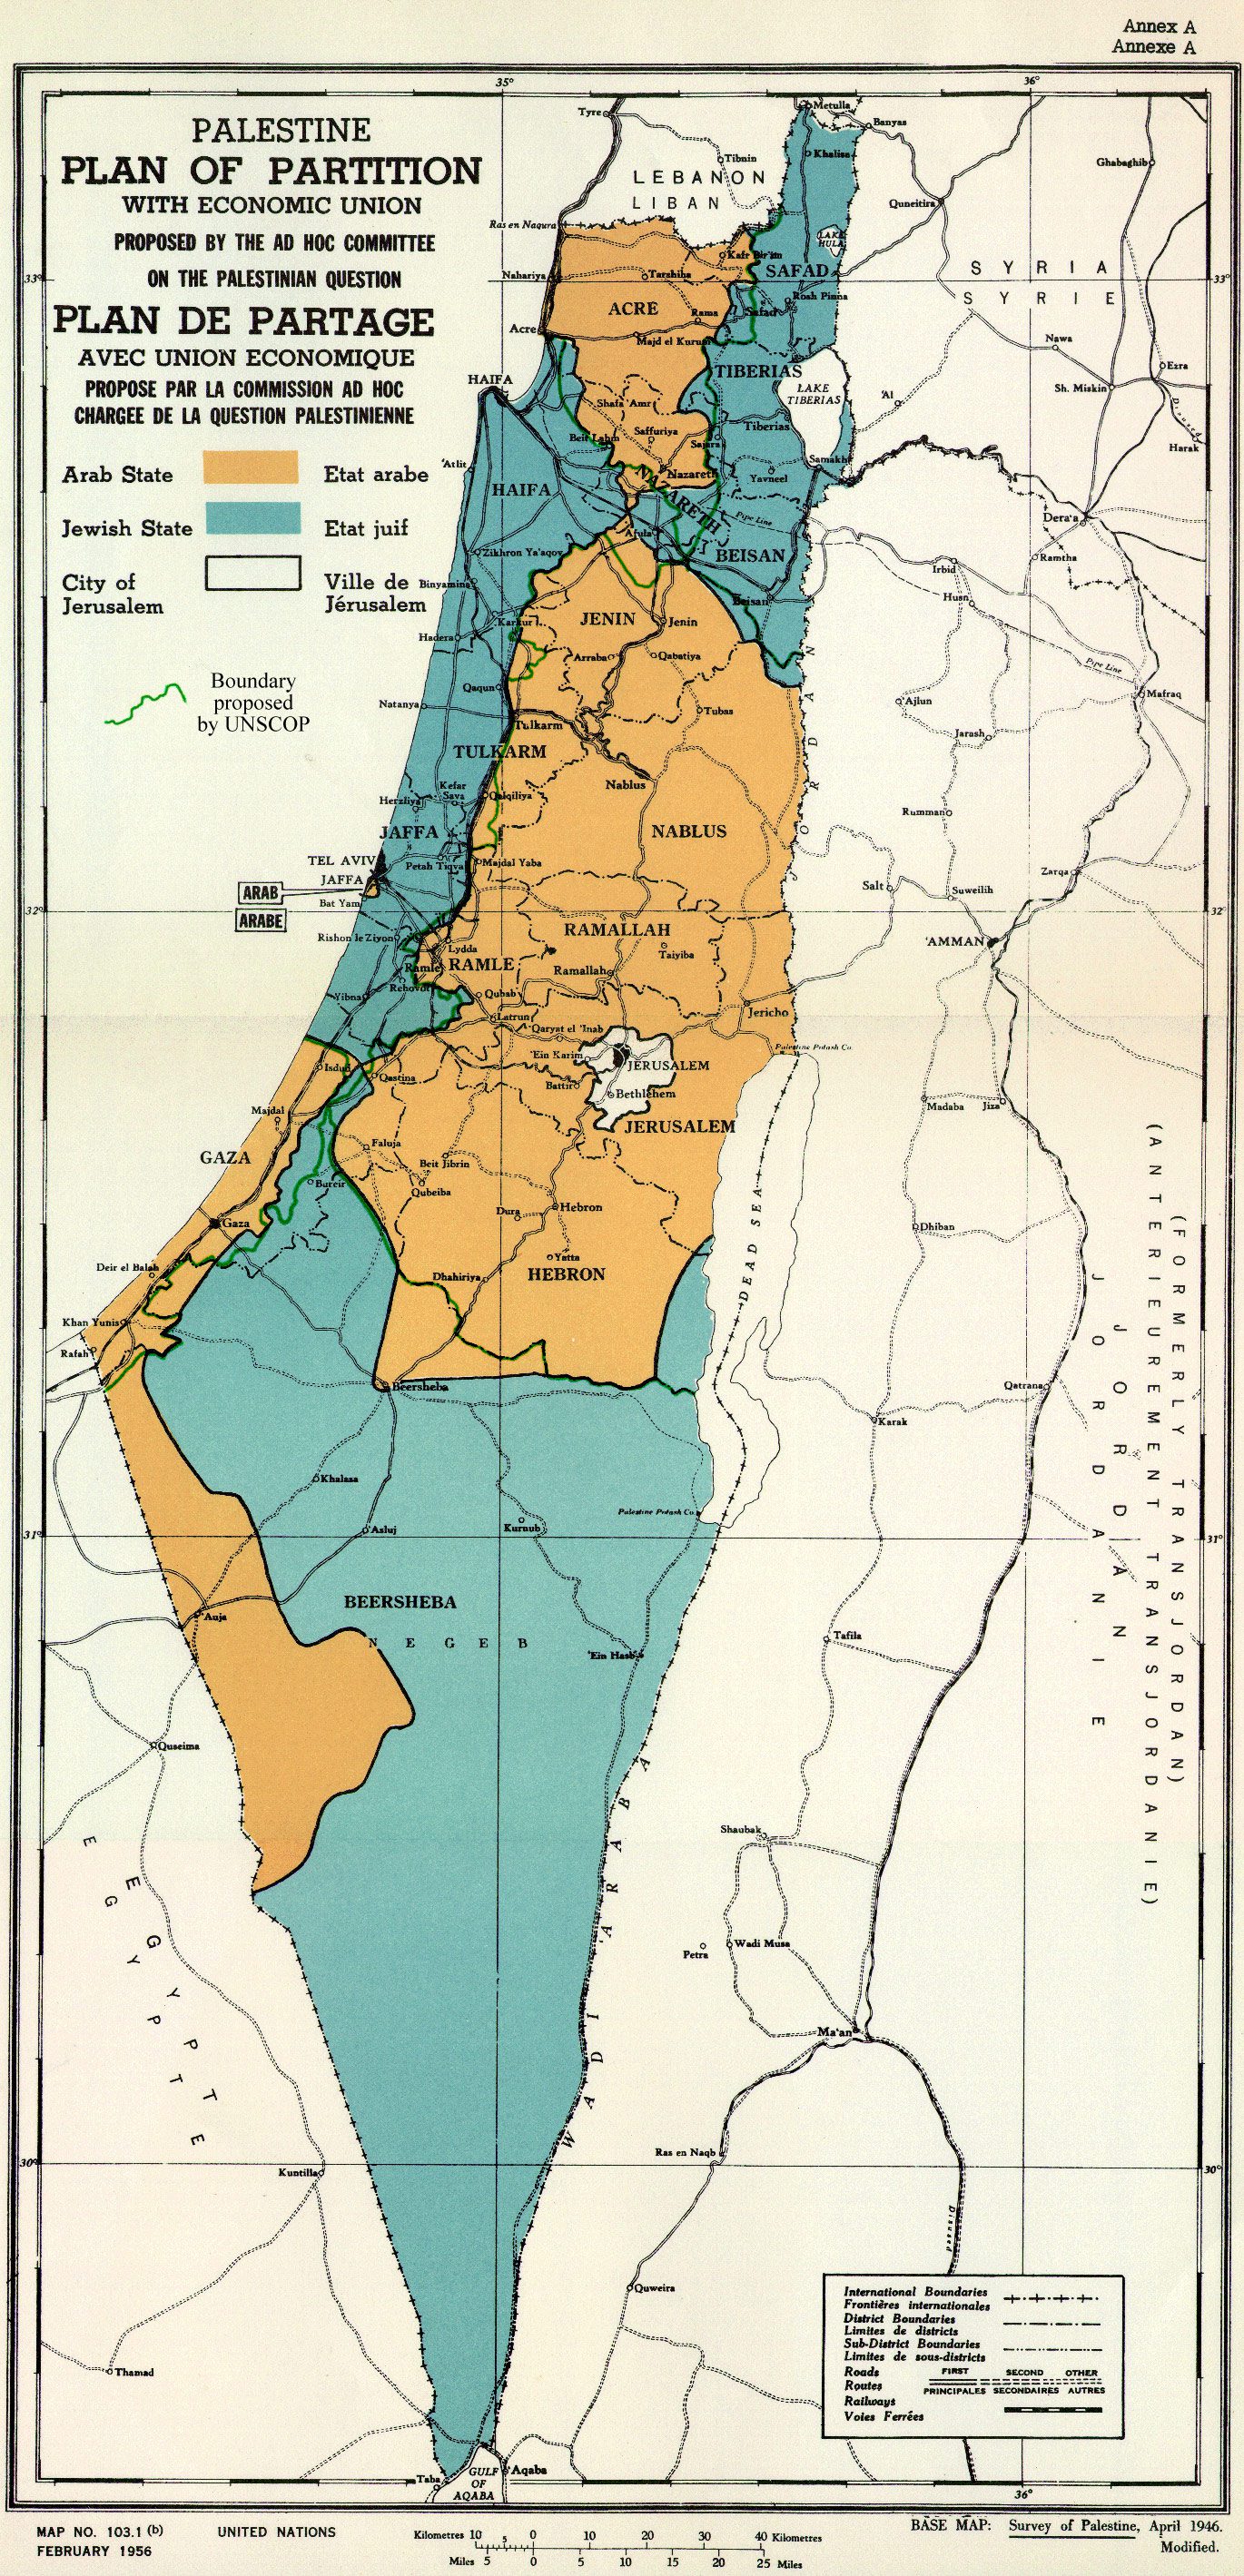 ”UN_Palestine_Partition_Versions_1947g0fjkTF”